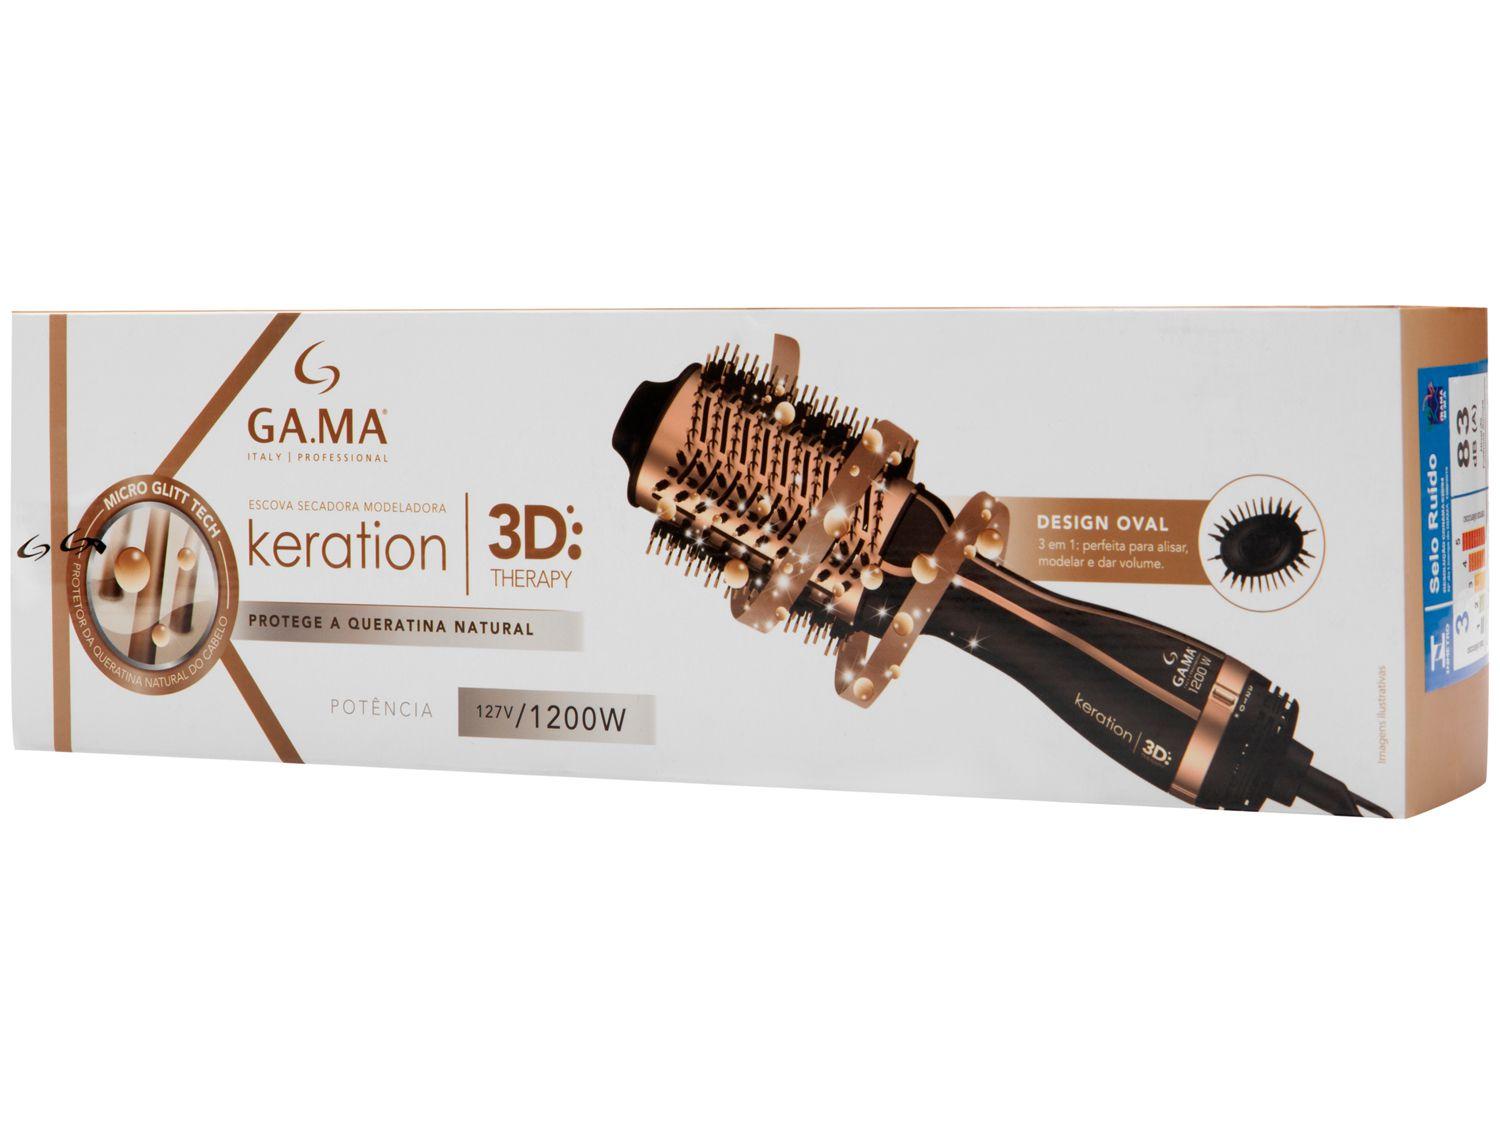 Escova Secadora Modeladora Gama Keration 3D Therapy - 127V